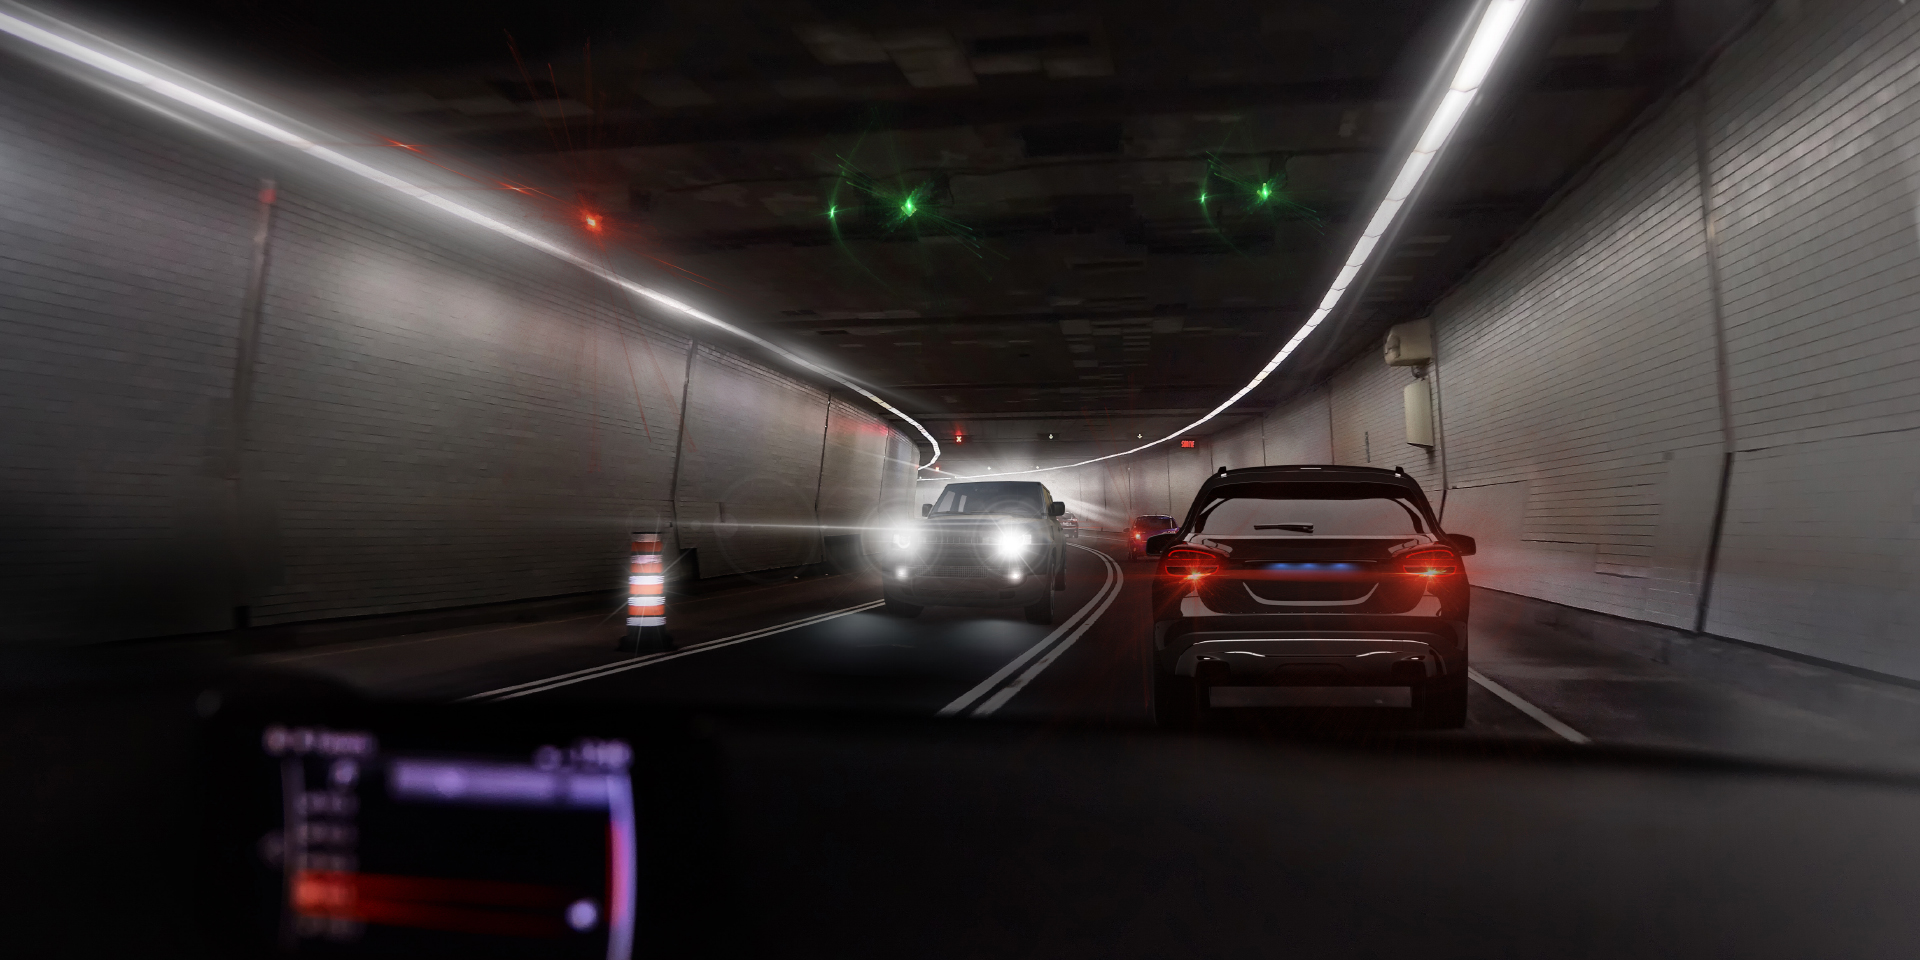 Kaksi näkökulmakuvaa kuljettajasta, joka ajaa tunnelissa ja vastaan tulee muuta liikennettä. Toisessa kuvassa näkyy häikäisyä autojen ja tunnelin valoista, ja toisessa kuvassa häikäisyä on selkeästi vähemmän.